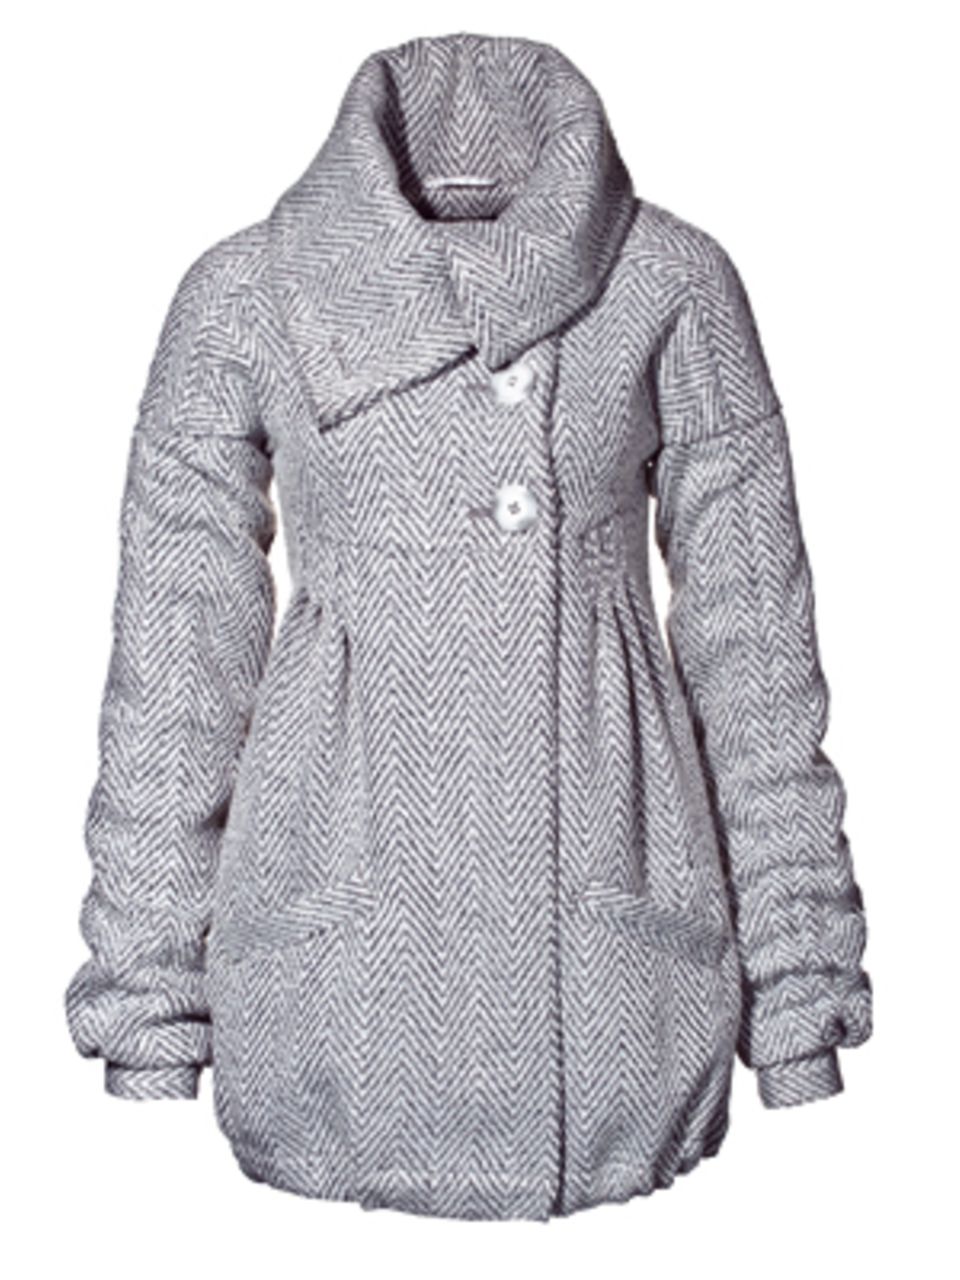 Der kuschelige Mantel aus Wollgemisch ist im angesagten Fischgrat-Köper gewebt. Von New Yorker, um 70 Euro.